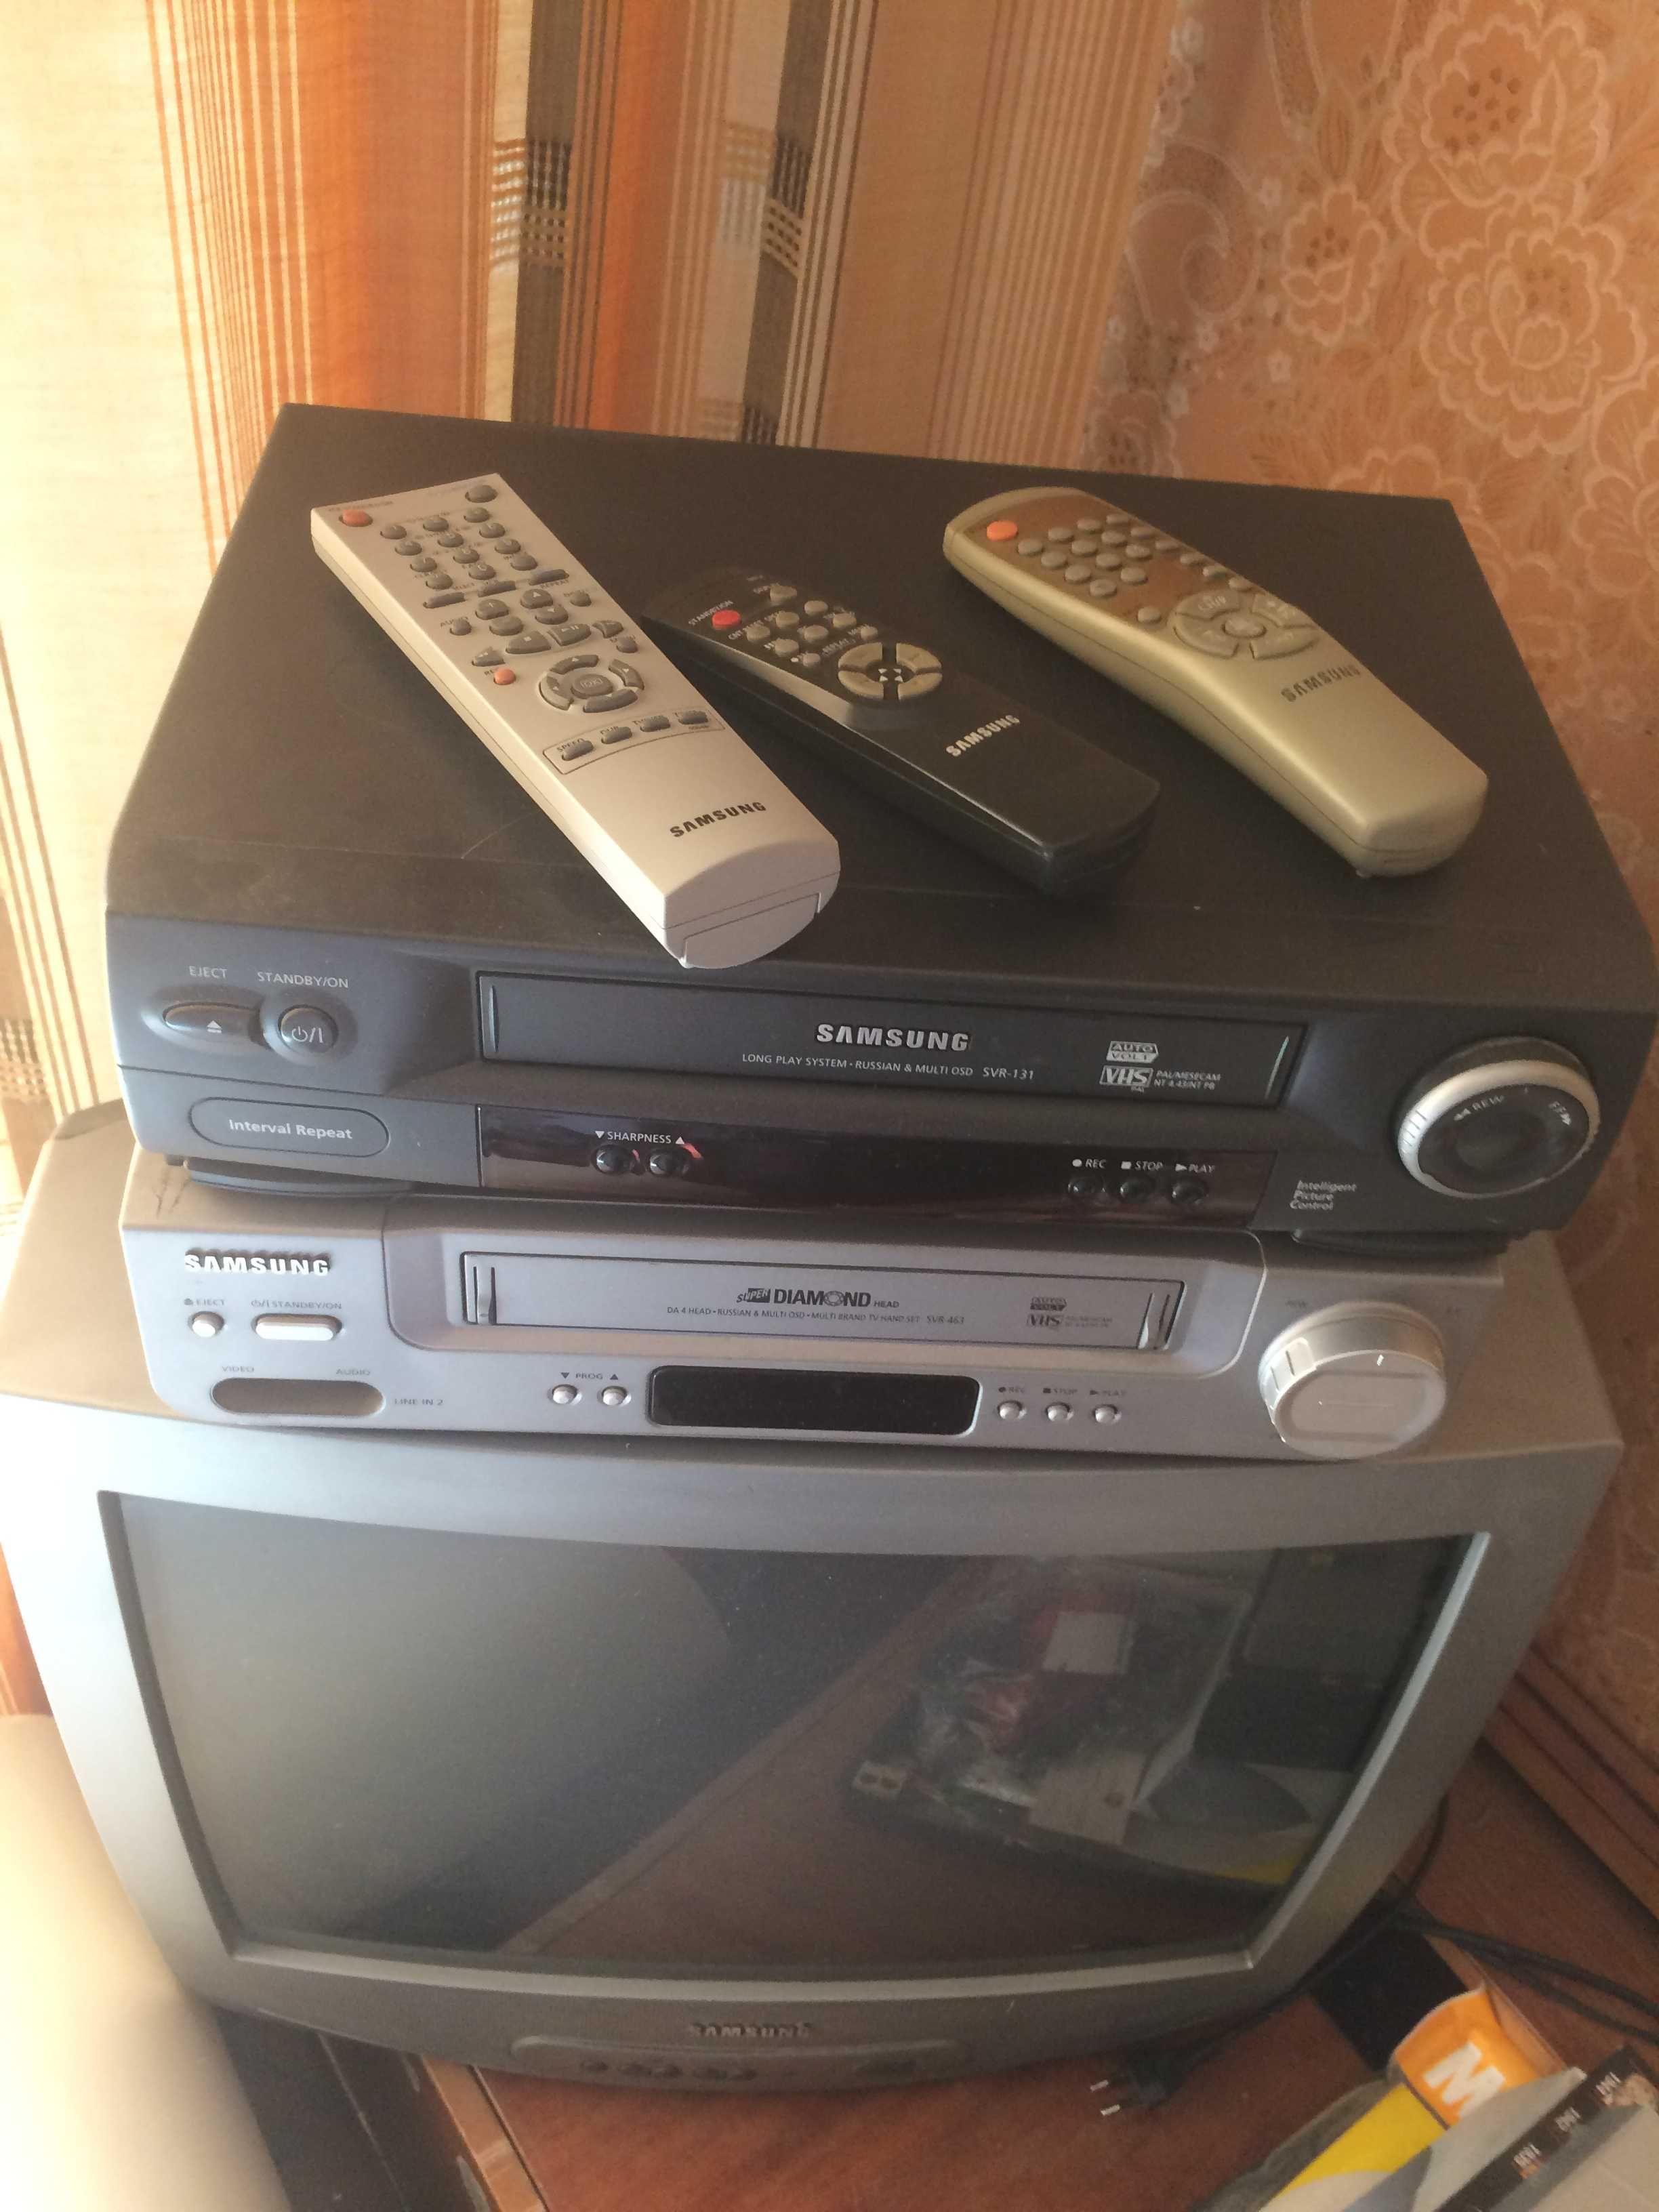 ТВ и Видеомаг Самсунг д 52см с пульт и набором видеокассет в отл сост